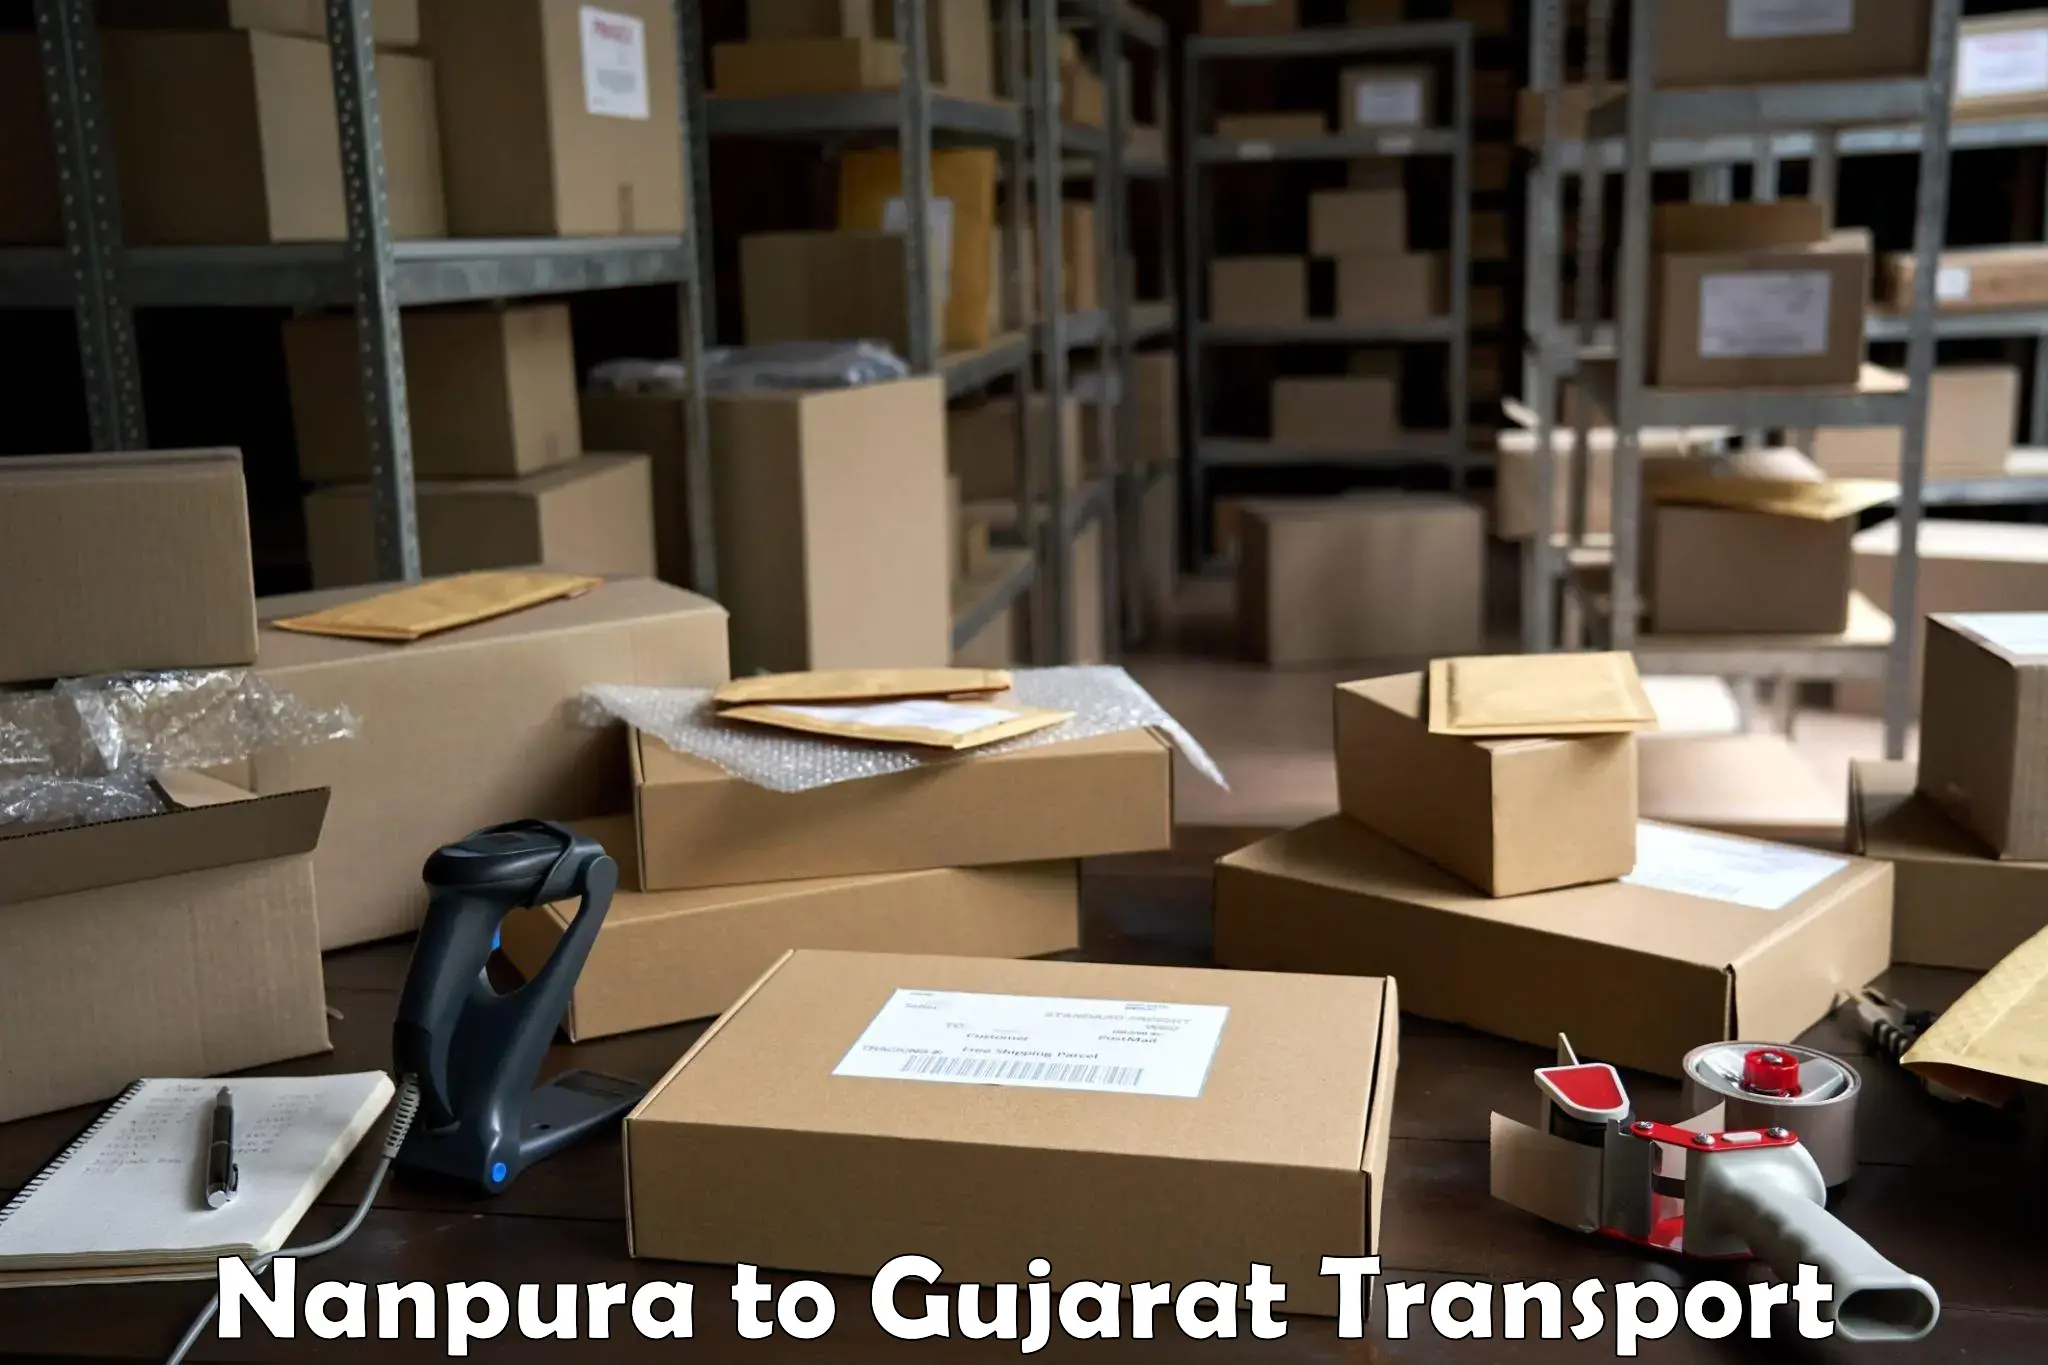 Furniture transport service Nanpura to Karjan